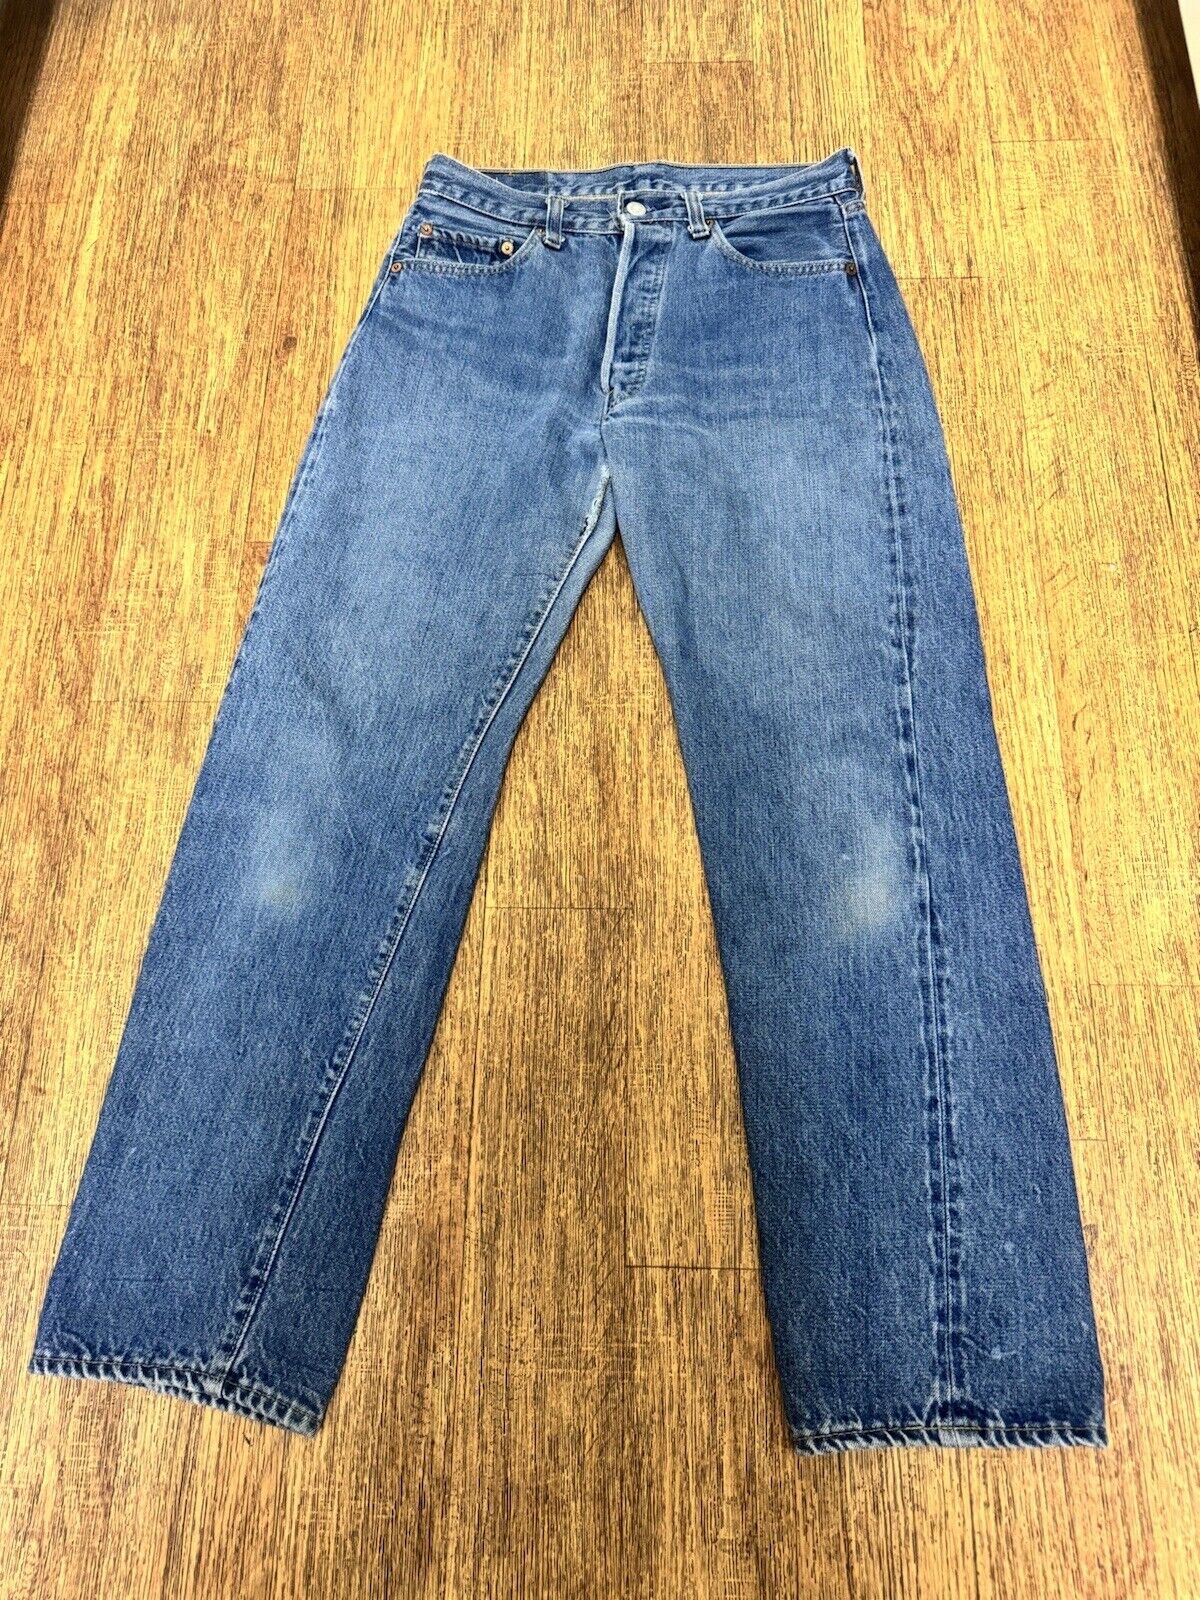 Vintage 70s 80s Levis 501 Jeans Redline Selvedge … - image 2